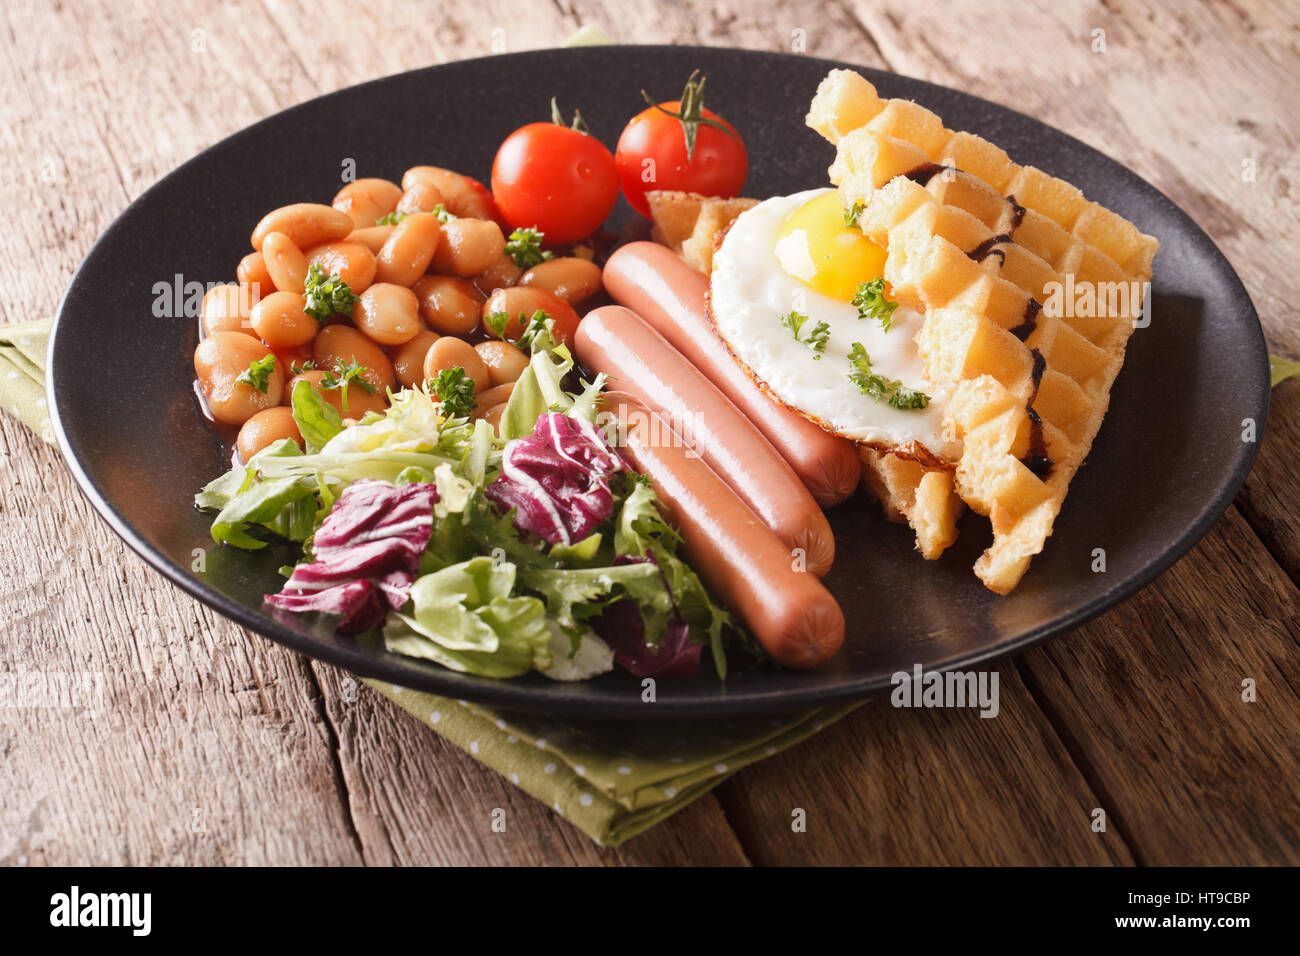 Frittelle fritte con uova, salsicce, fagioli e insalata fresca close-up su una piastra orizzontale. Foto Stock